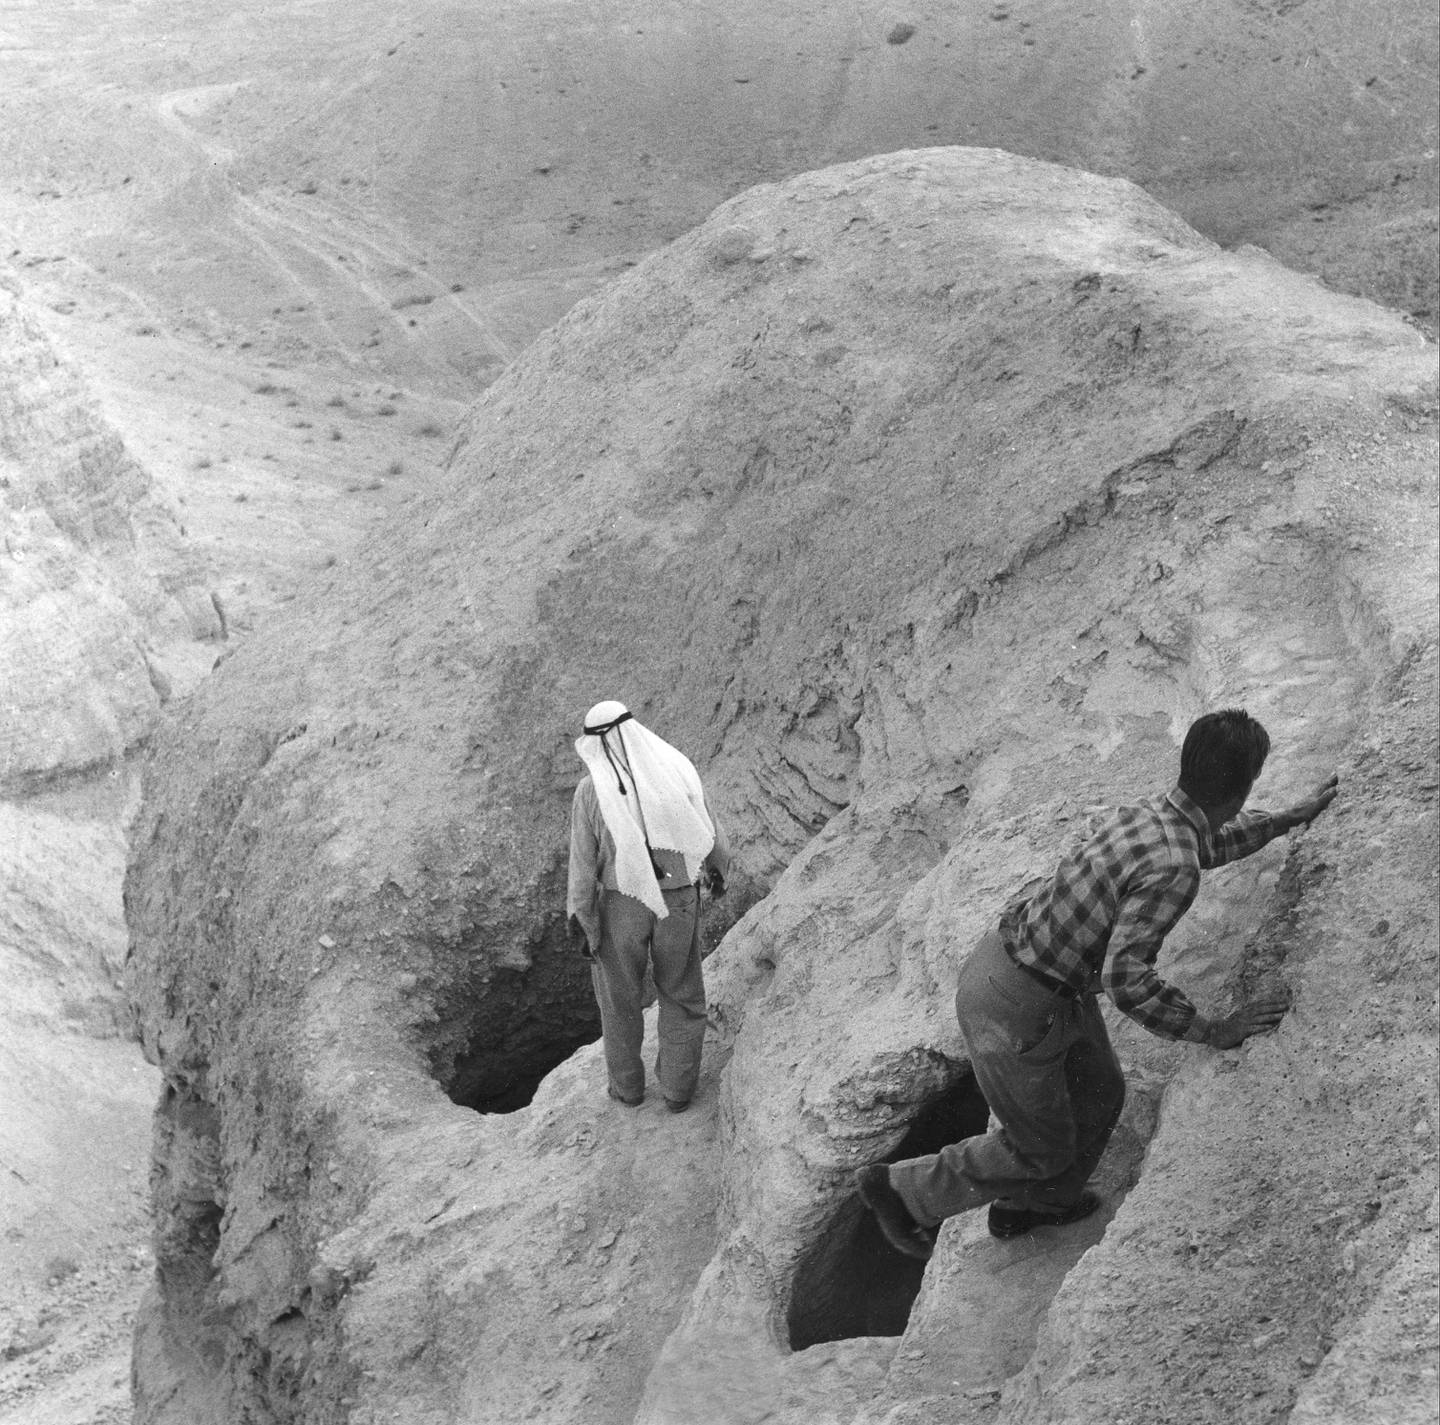 FUNNET: Dødehavsrullene ble funnet i huler i Qumran og andre steder i området. De fleste forskere mener manuskriptene er skrevet innen den jødiske esseer-bevegelsen. Kanskje ble skriftene gjemt i hulene da romerne inntok Qumran noen tiår før Kristi fødsel.